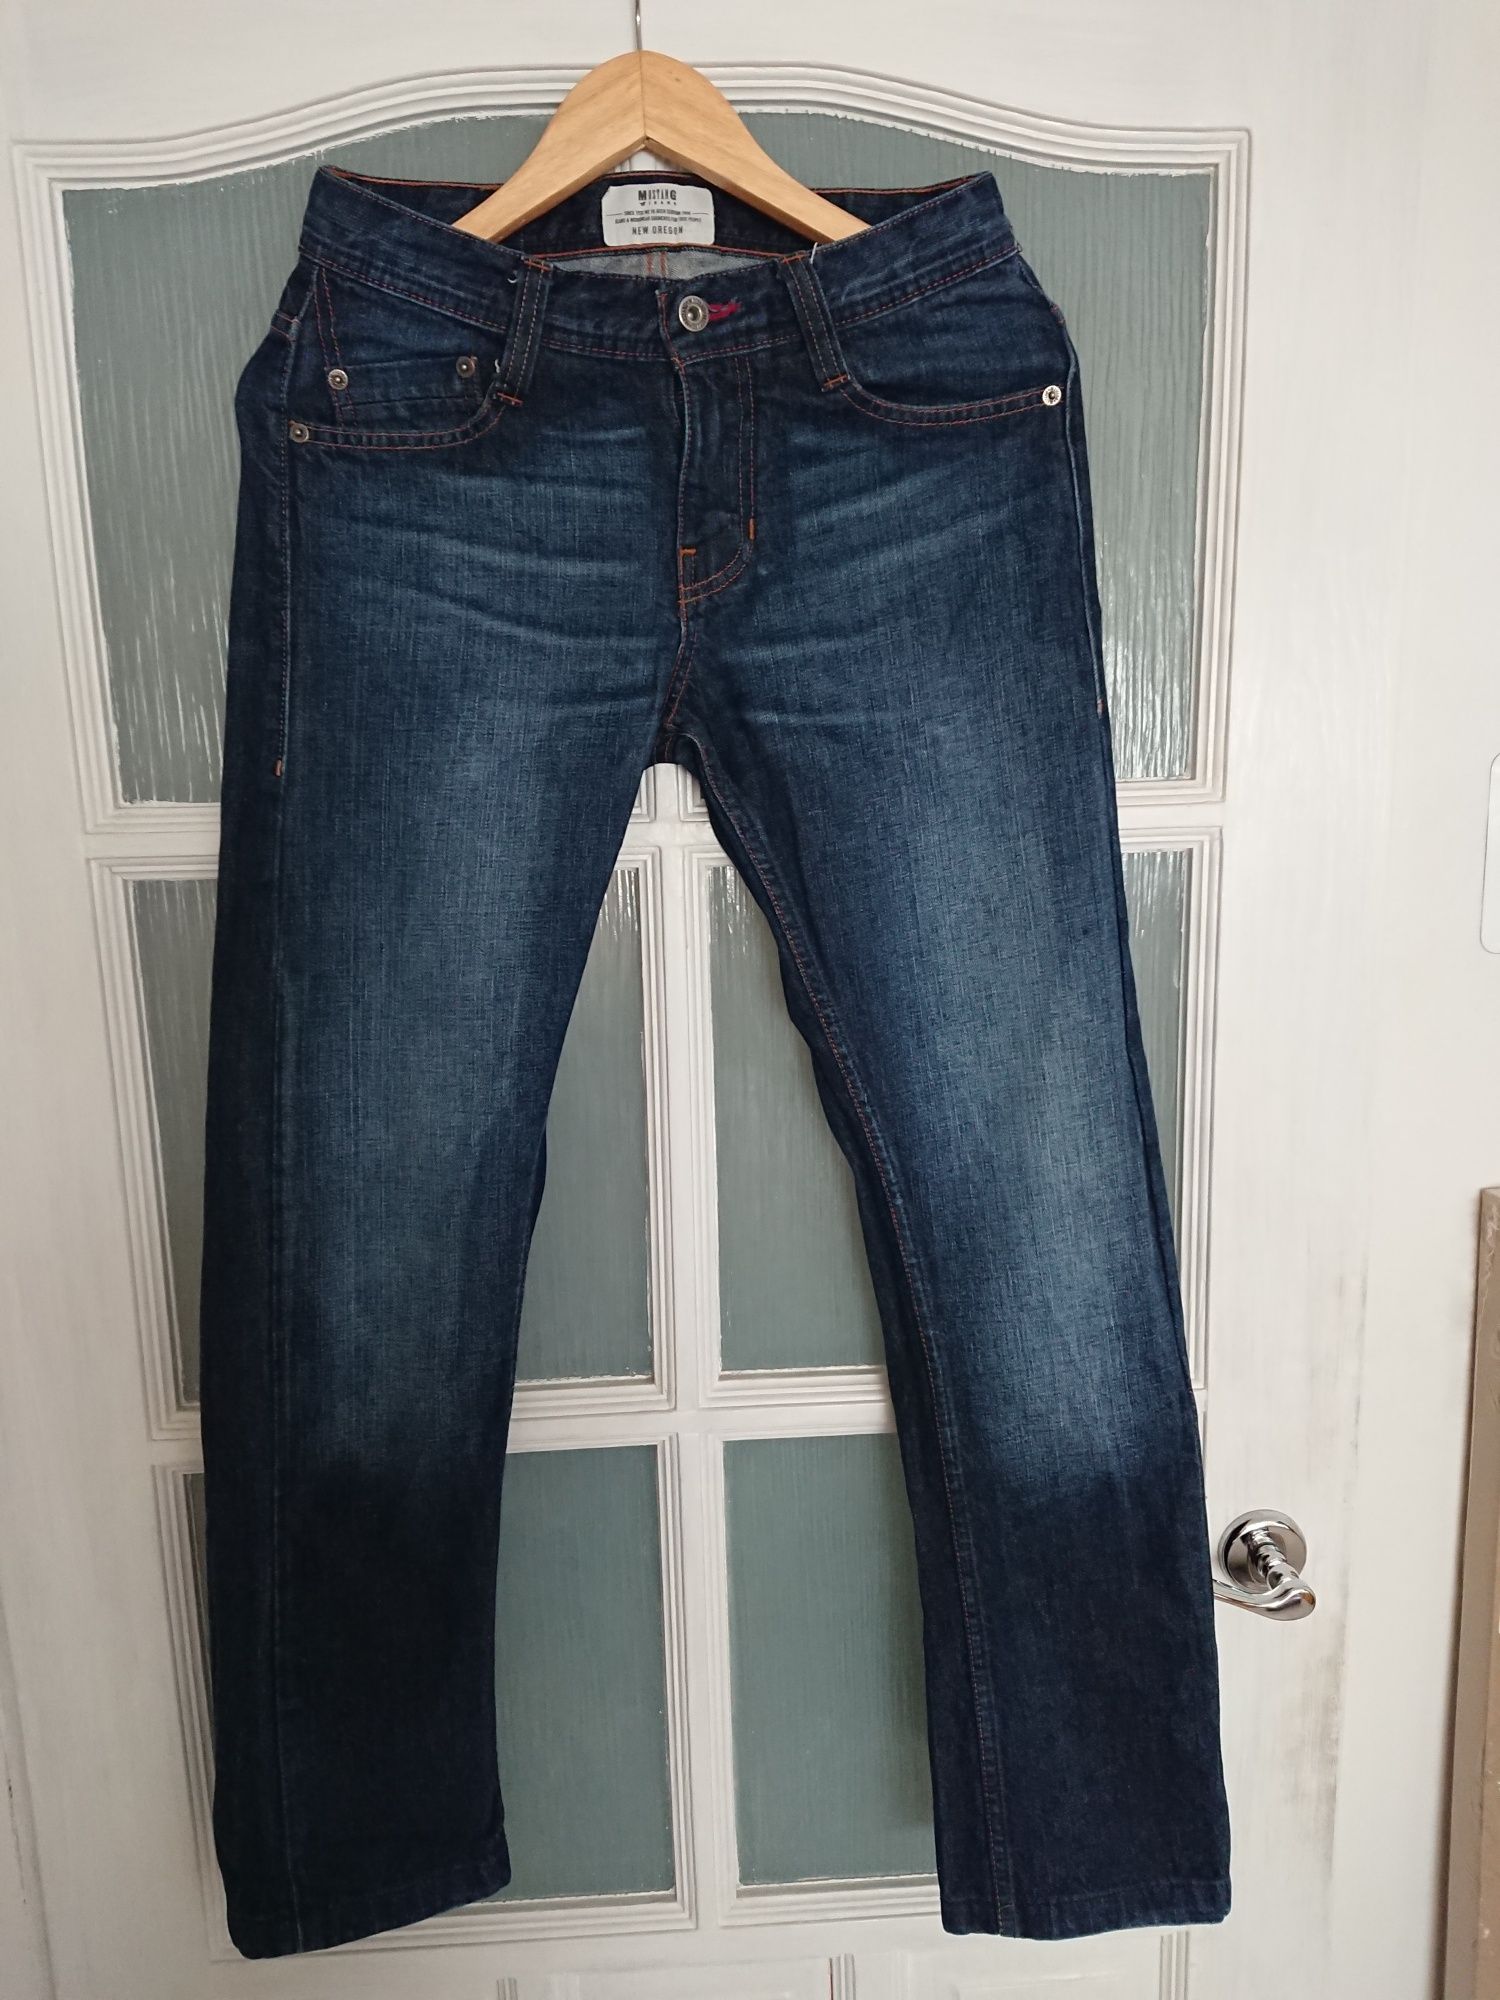 Spodnie, jeansy firmy Mustang, rozmiar 29/34